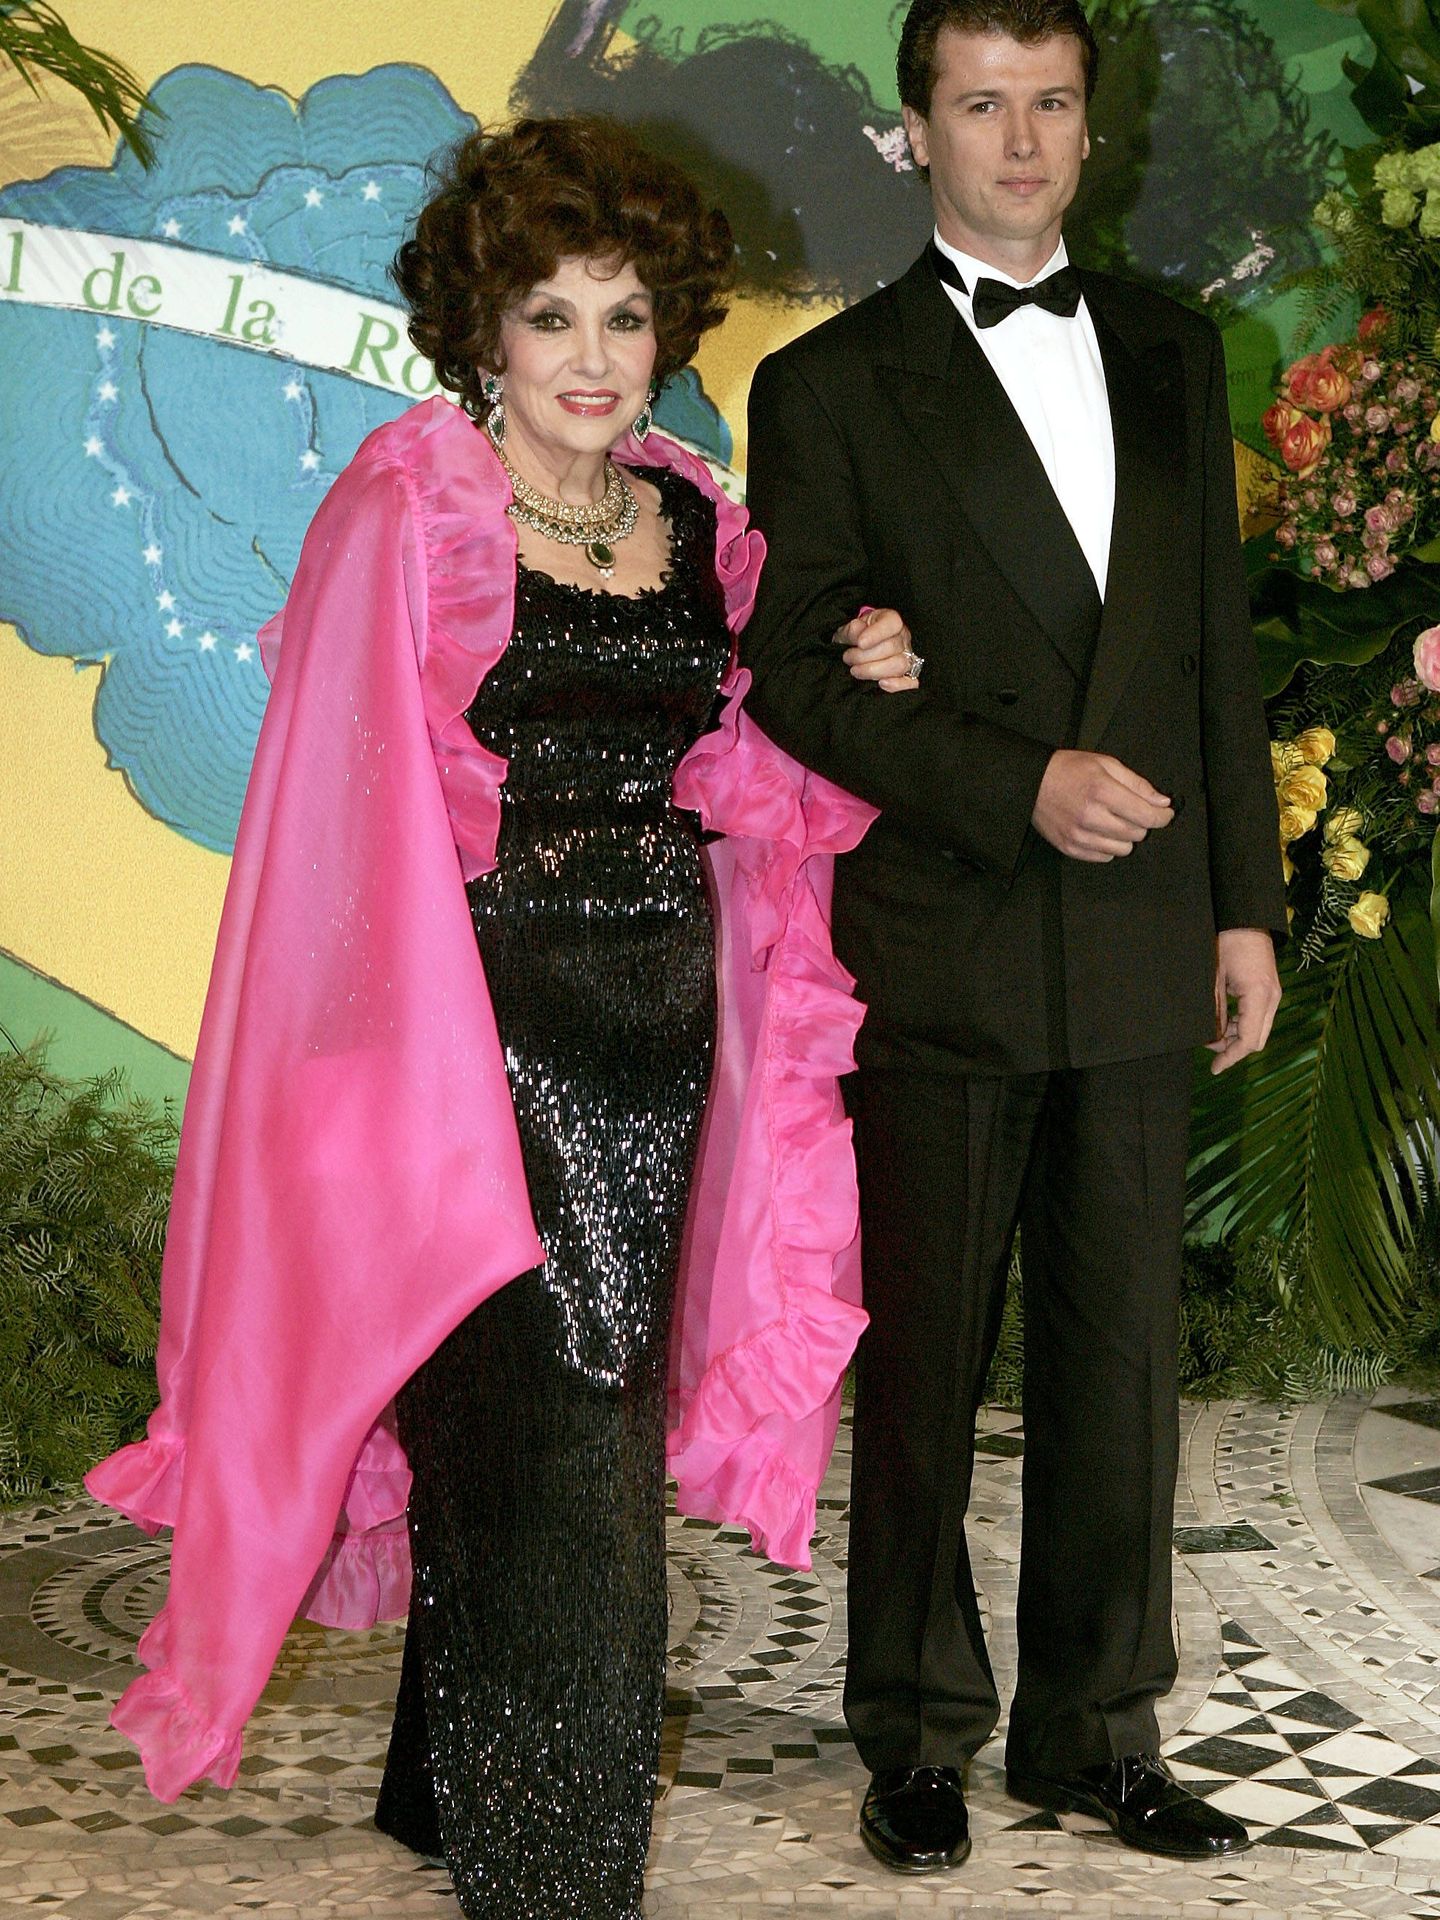 Gina Lollobrigida y Javier Rigau en el Baile de la Rosa de 2005. (Getty)